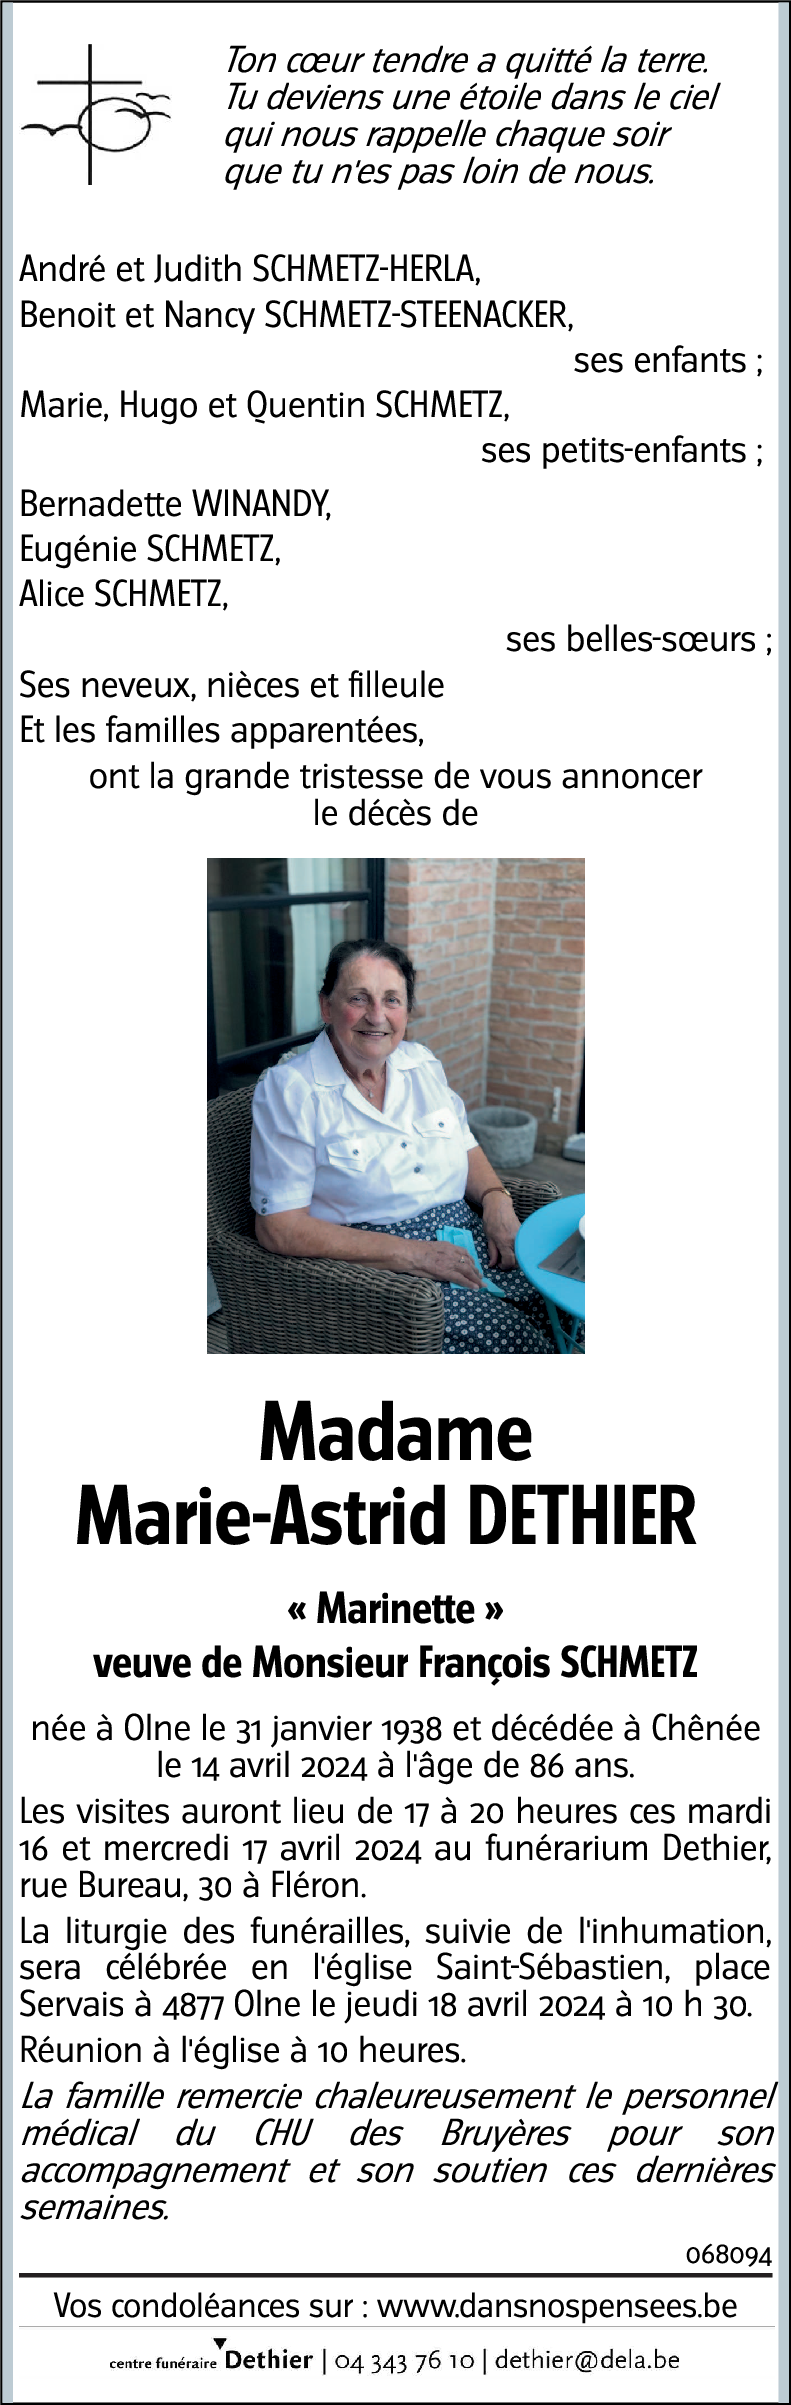 Marinette DETHIER